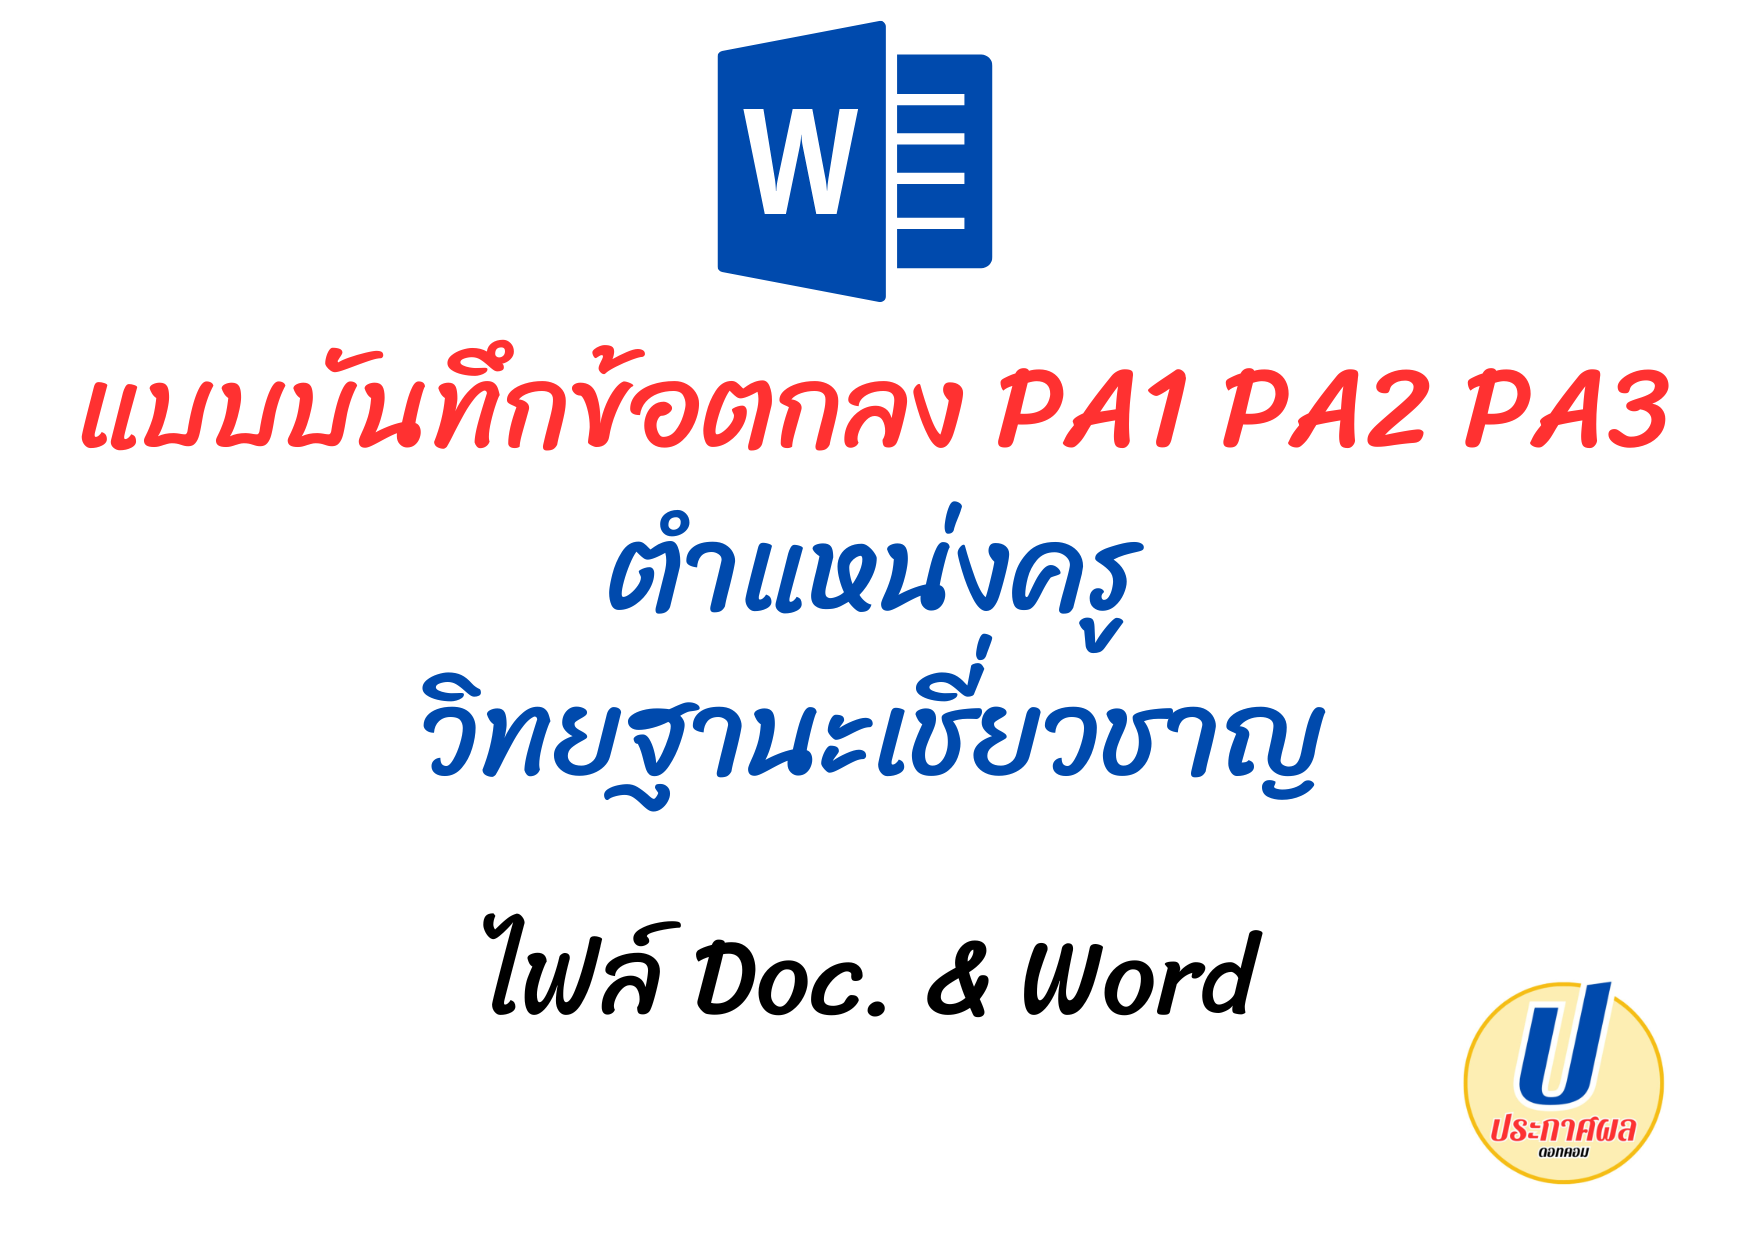 PA1 PA2 PA3 แบบบันทึกข้อตกลง ตำแหน่งครู วิทยฐานะ เชี่ยวชาญ ไฟล์ doc & word 